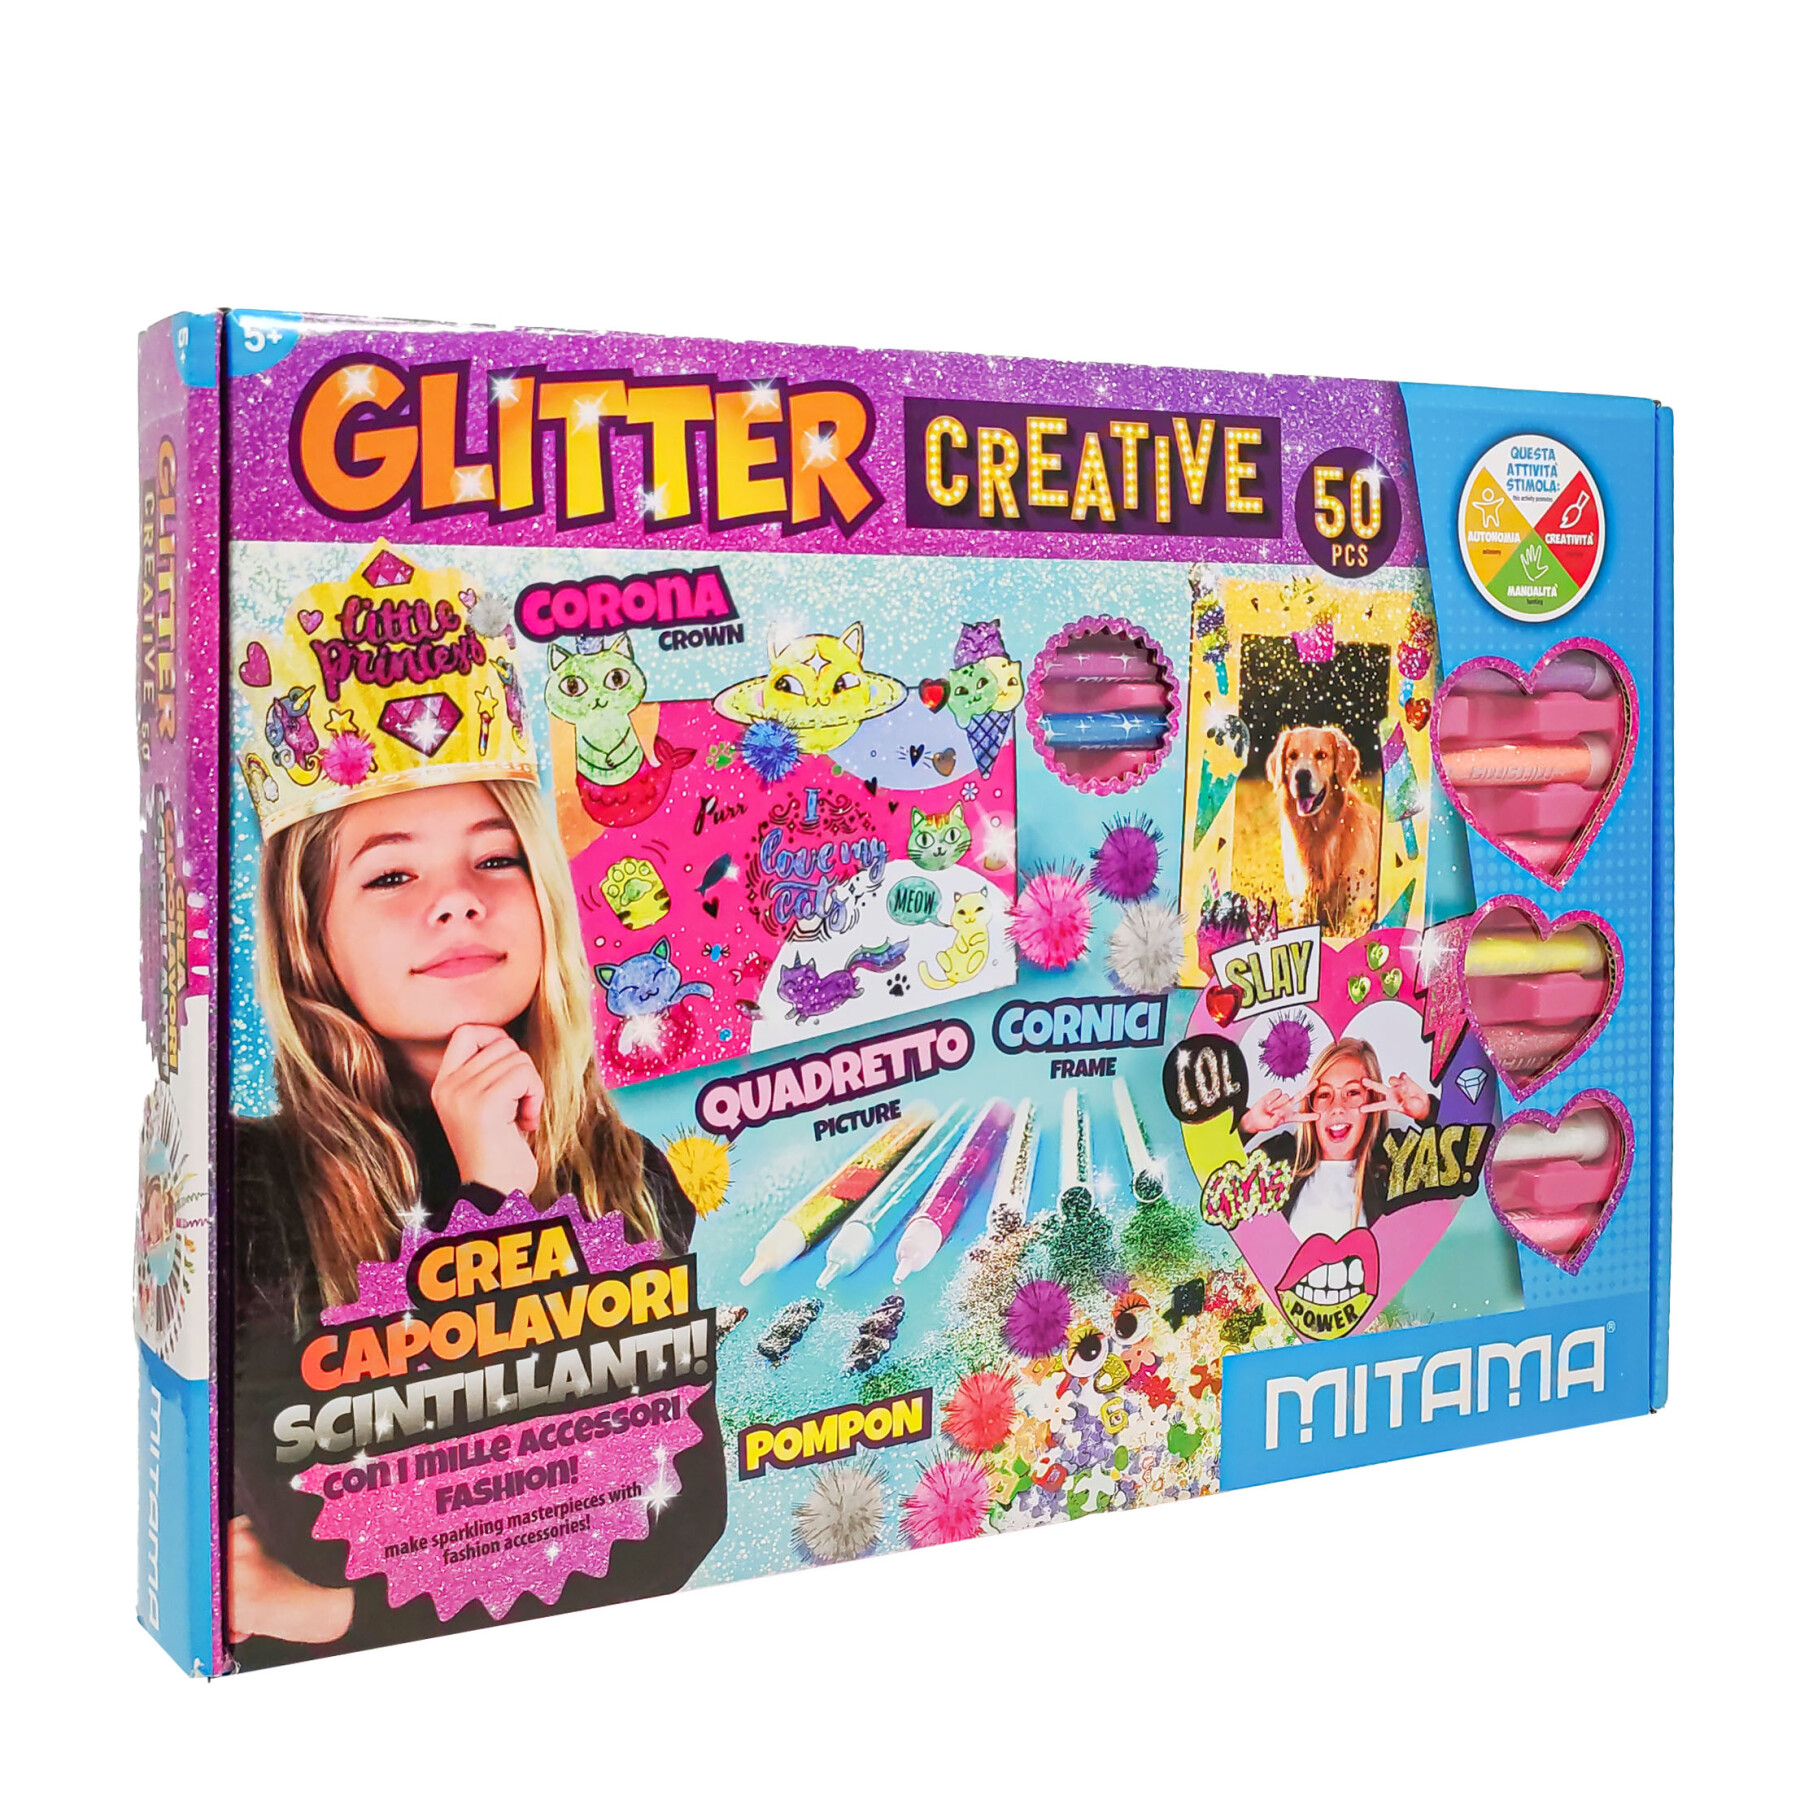 Glitter creative, scatola creativa con glitter e 50 pezzi. - 